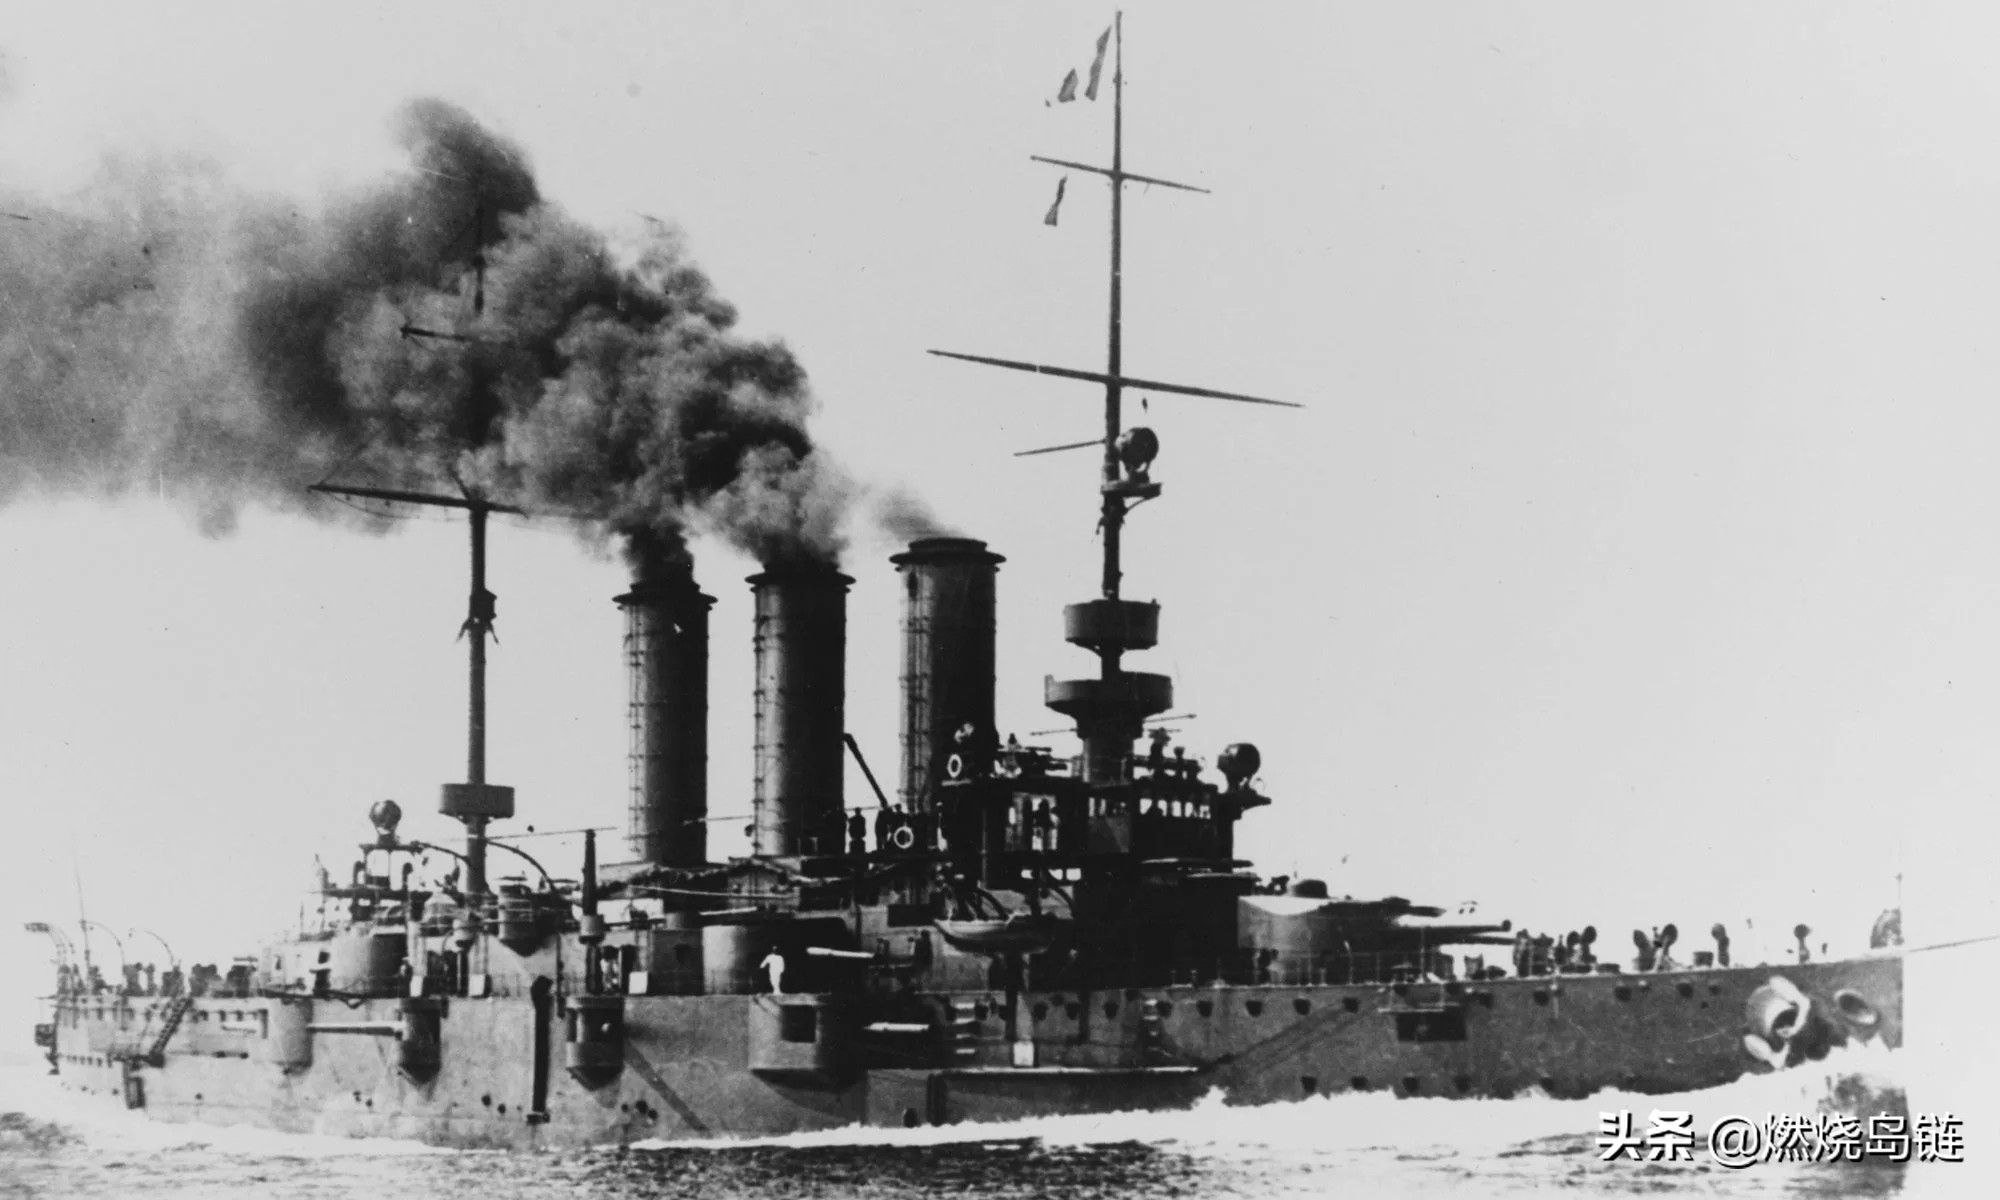 消逝的奥匈帝国海军首艘万吨级主力舰卡尔大公级战列舰